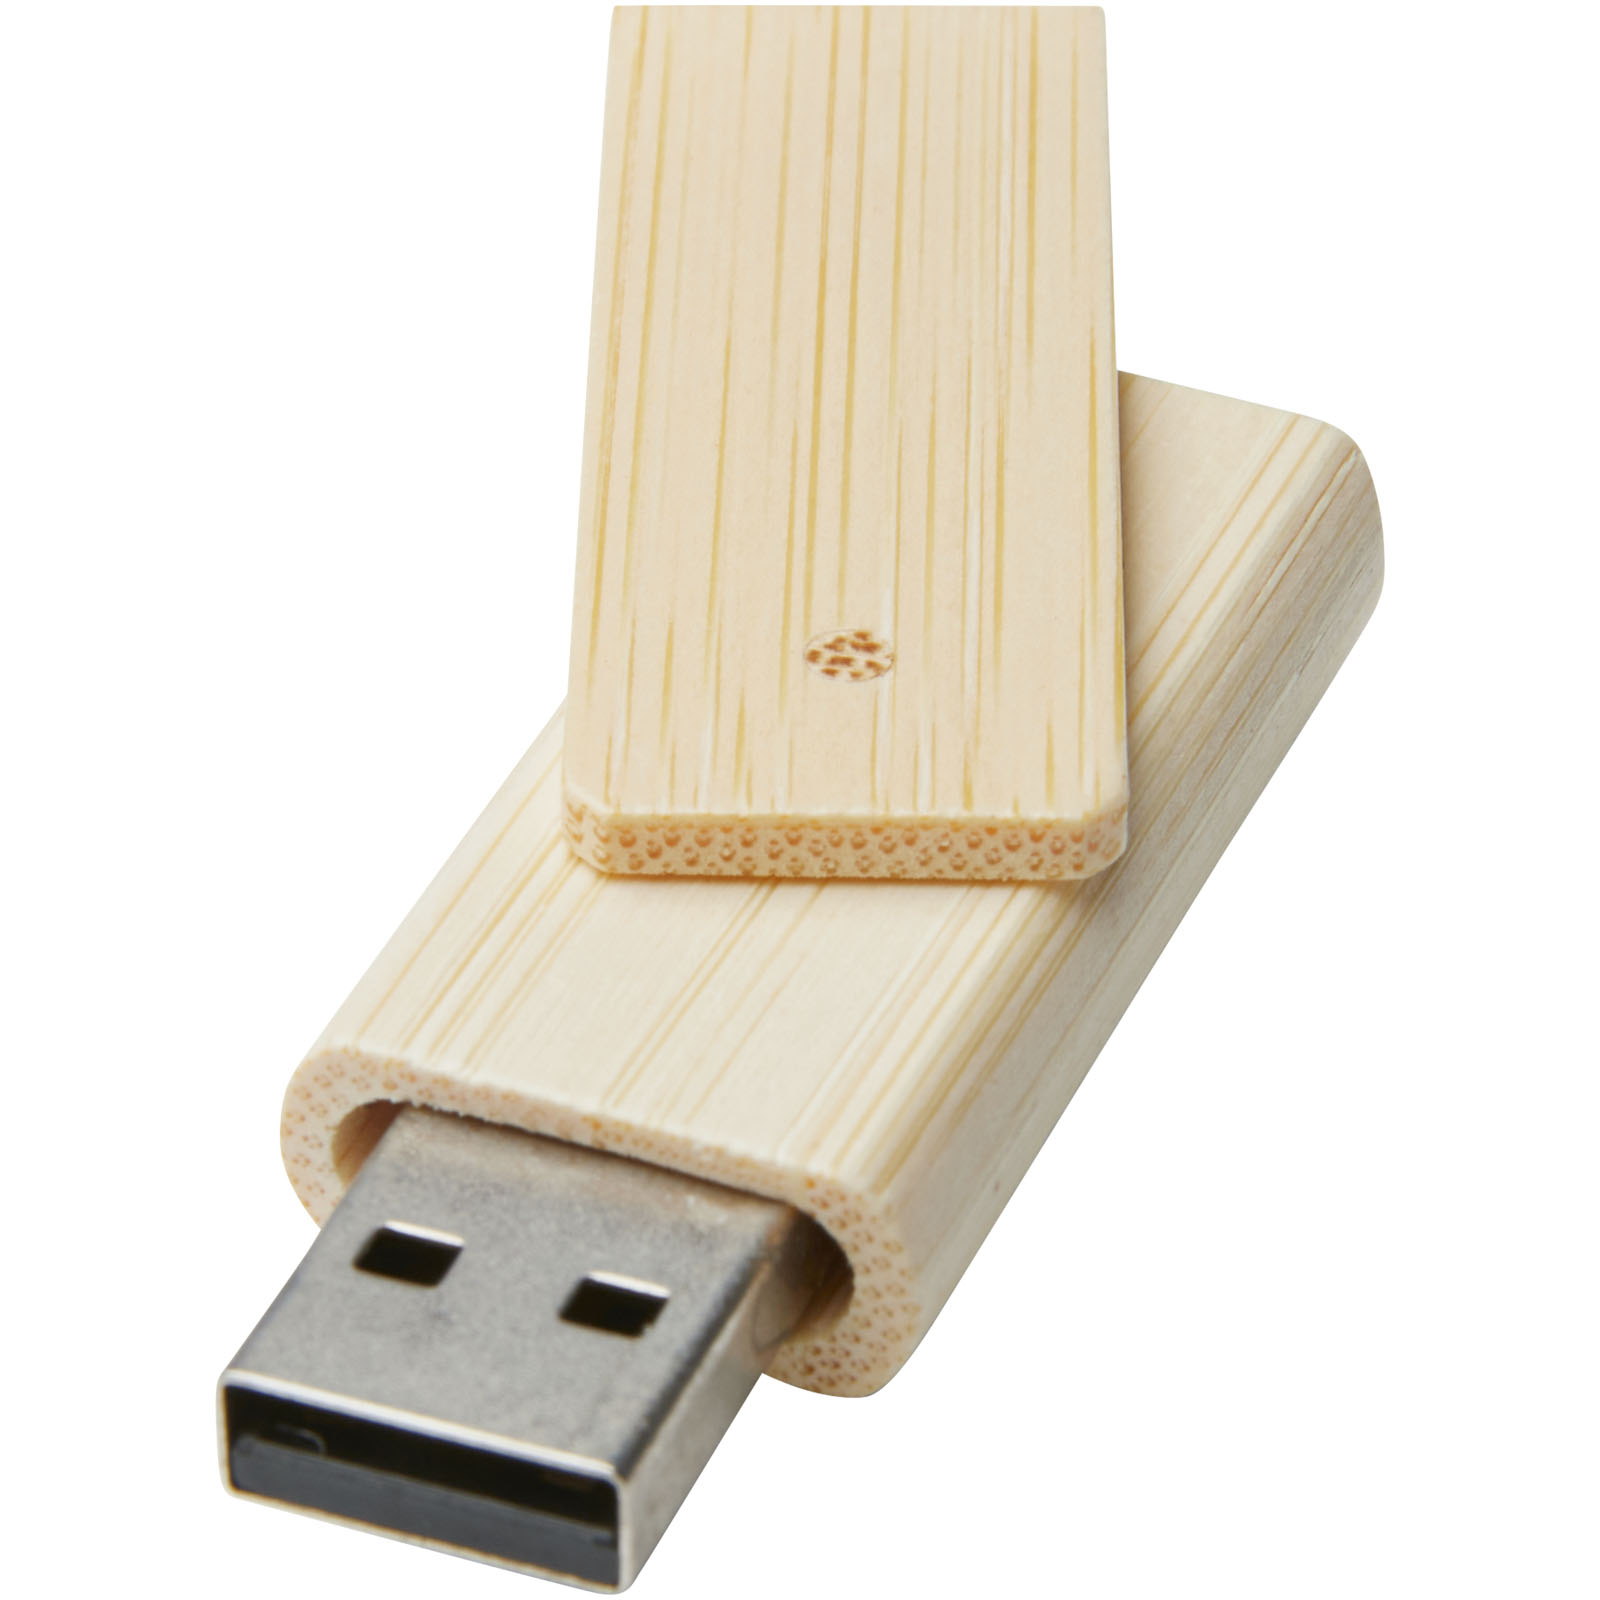 16GB Bamboo USB 2.0 Flash-Laufwerk - Schwarzenbek 